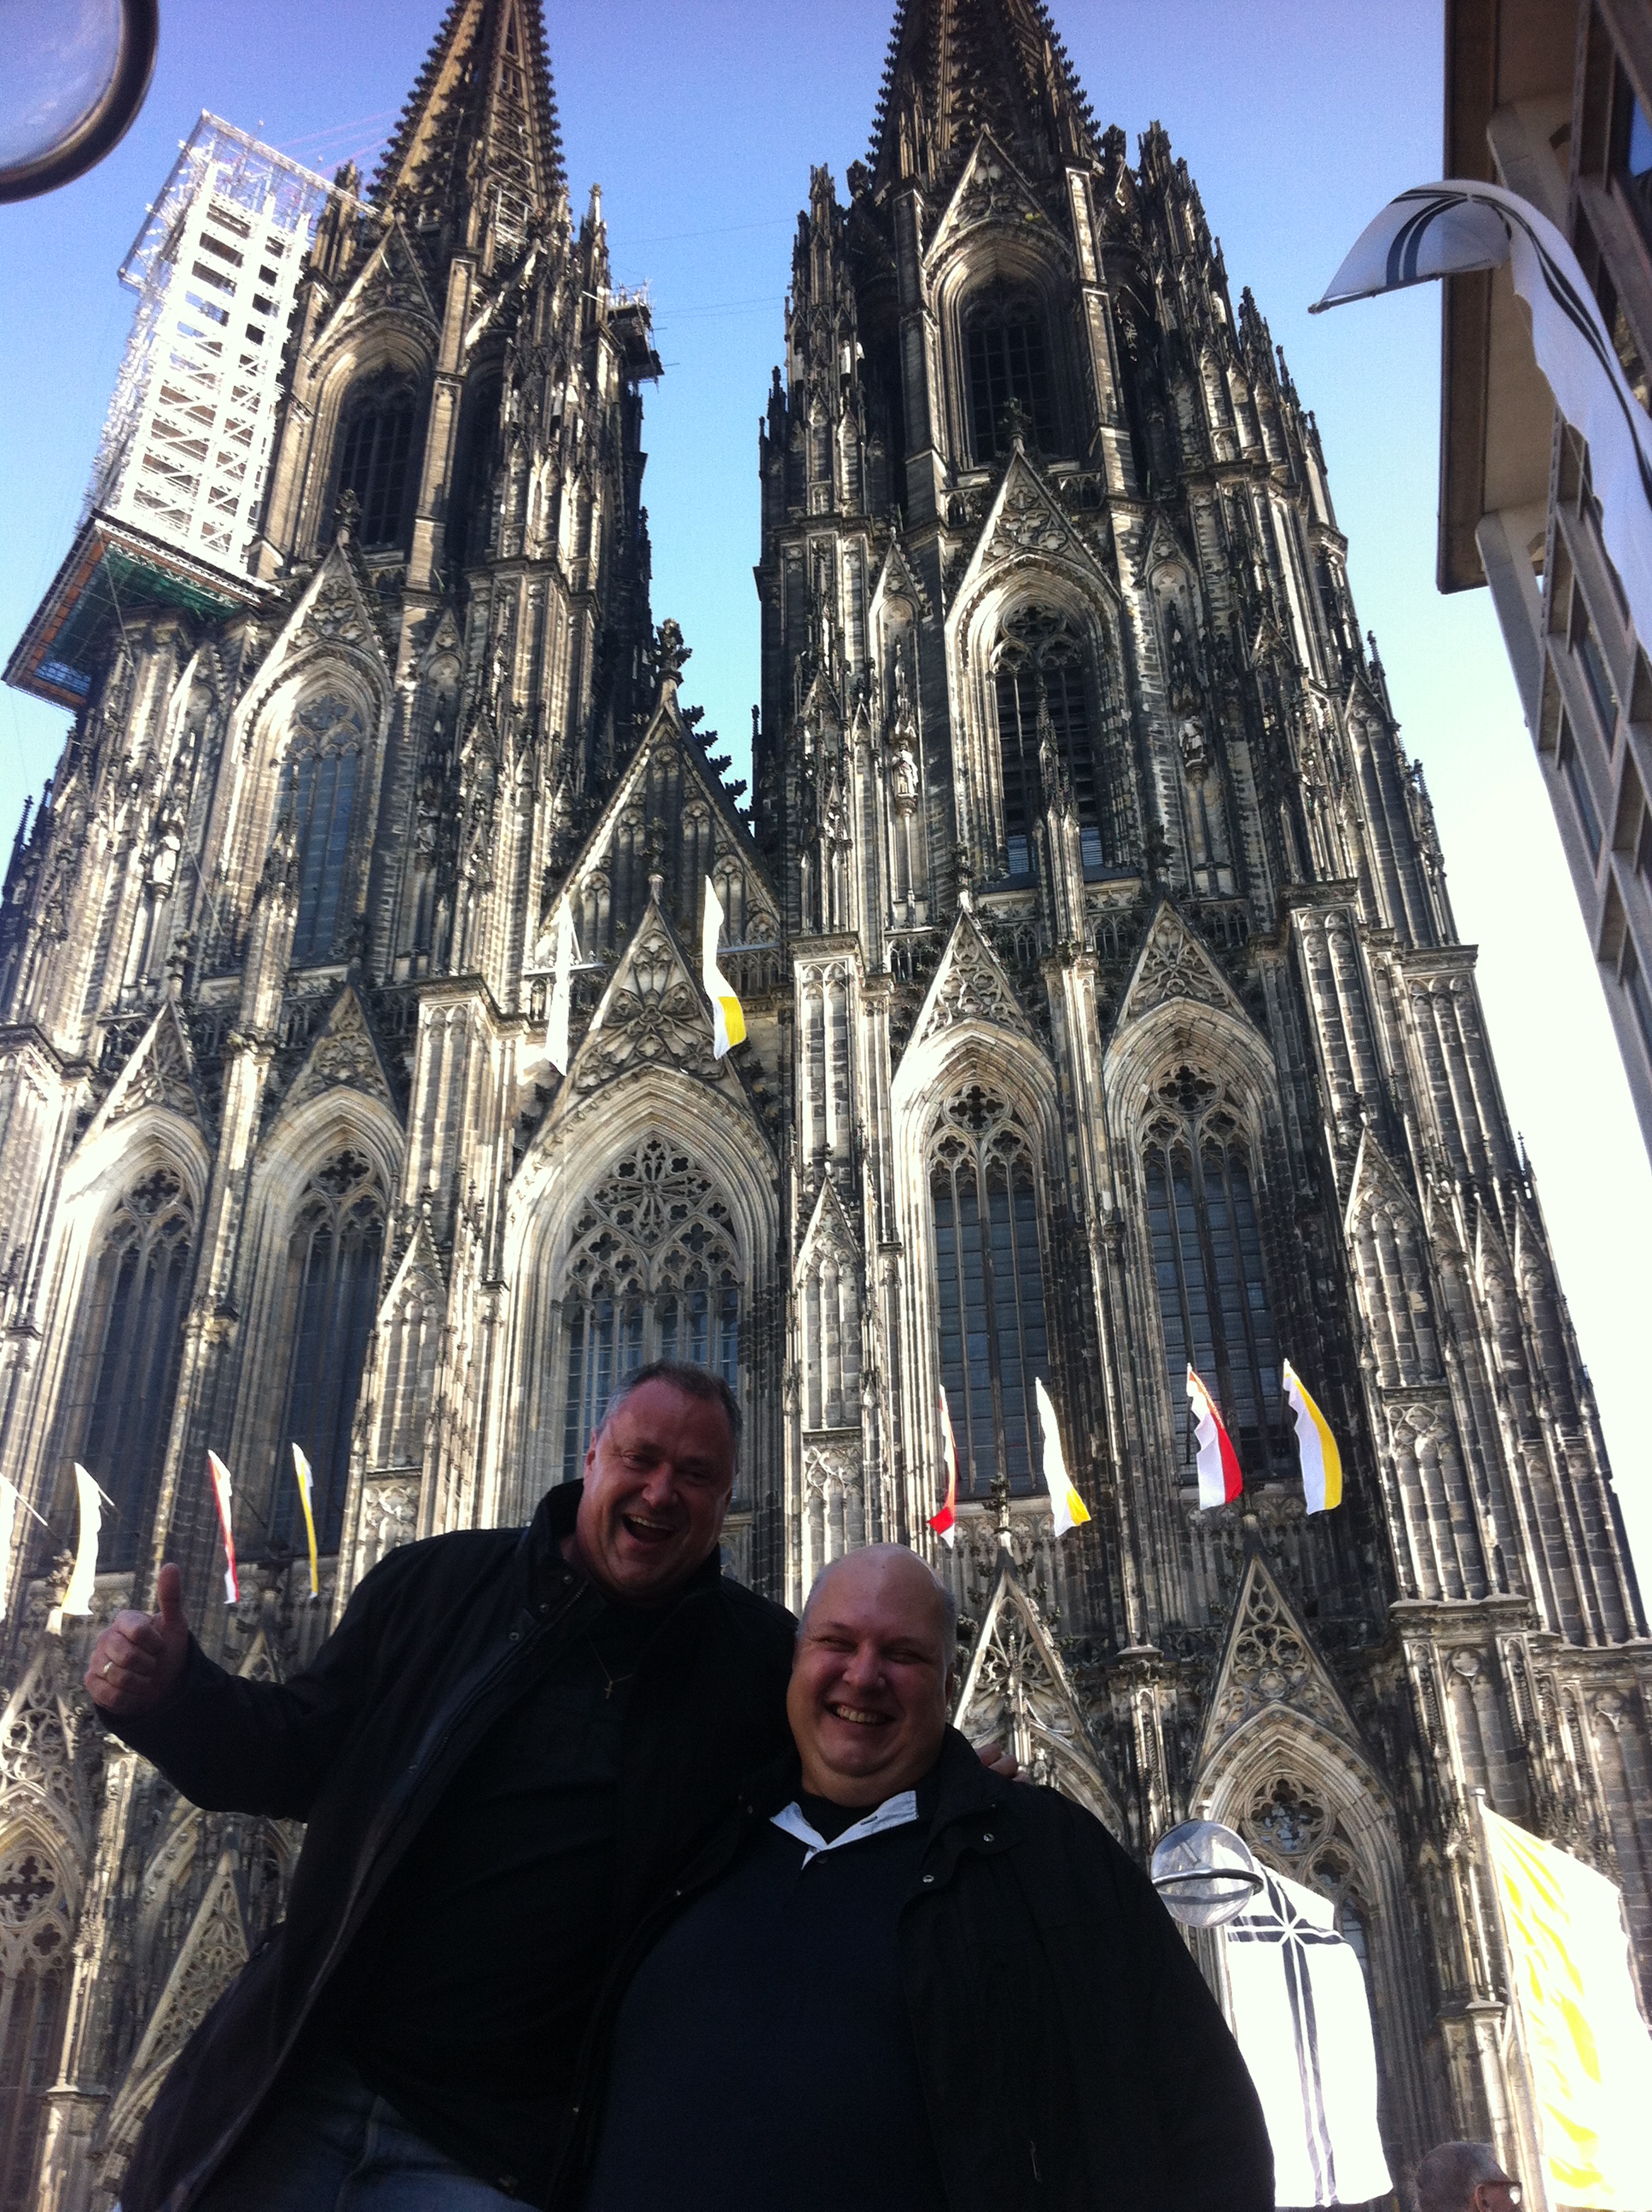 , Colonia, una vez más muy emocional&#8230; lebe Köln am Rhein, Mario Schumacher Blog